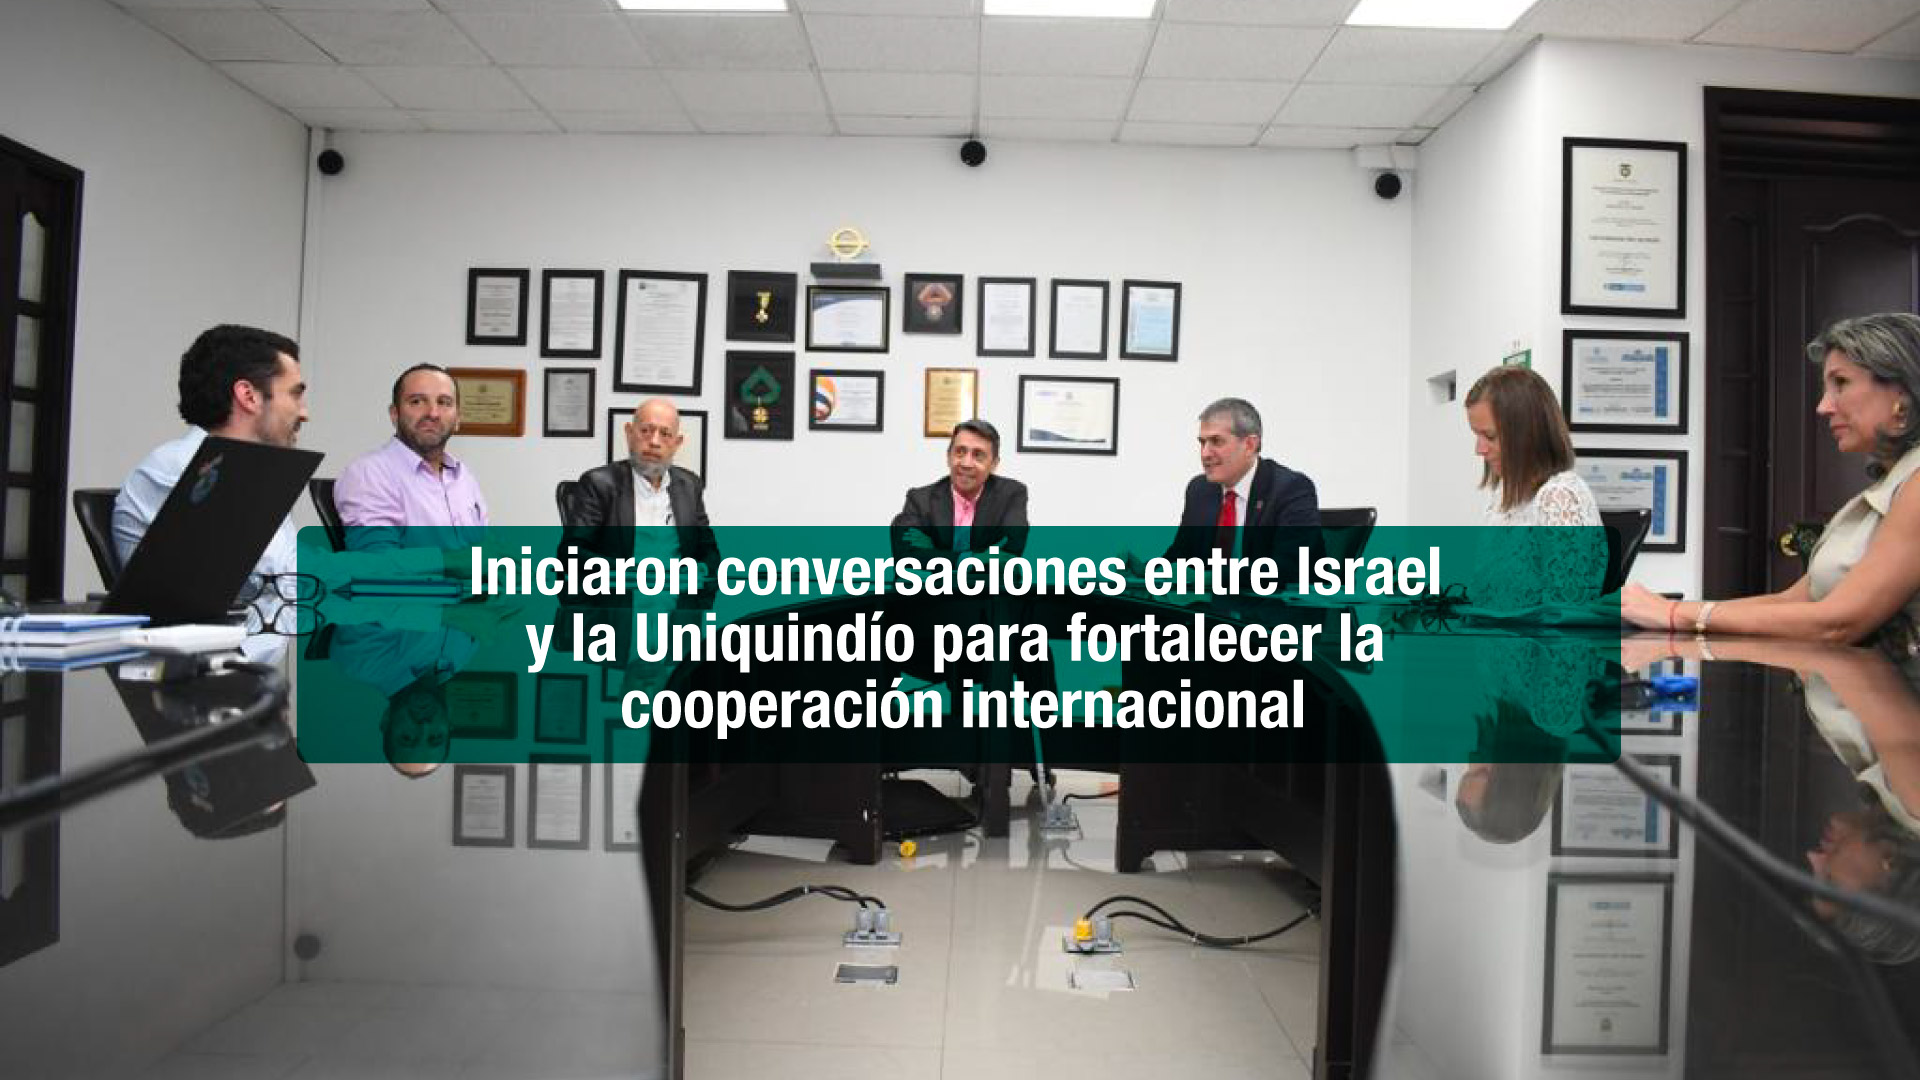 Iniciaron conversaciones entre Israel y la Uniquindío para fortalecer la cooperación internacional